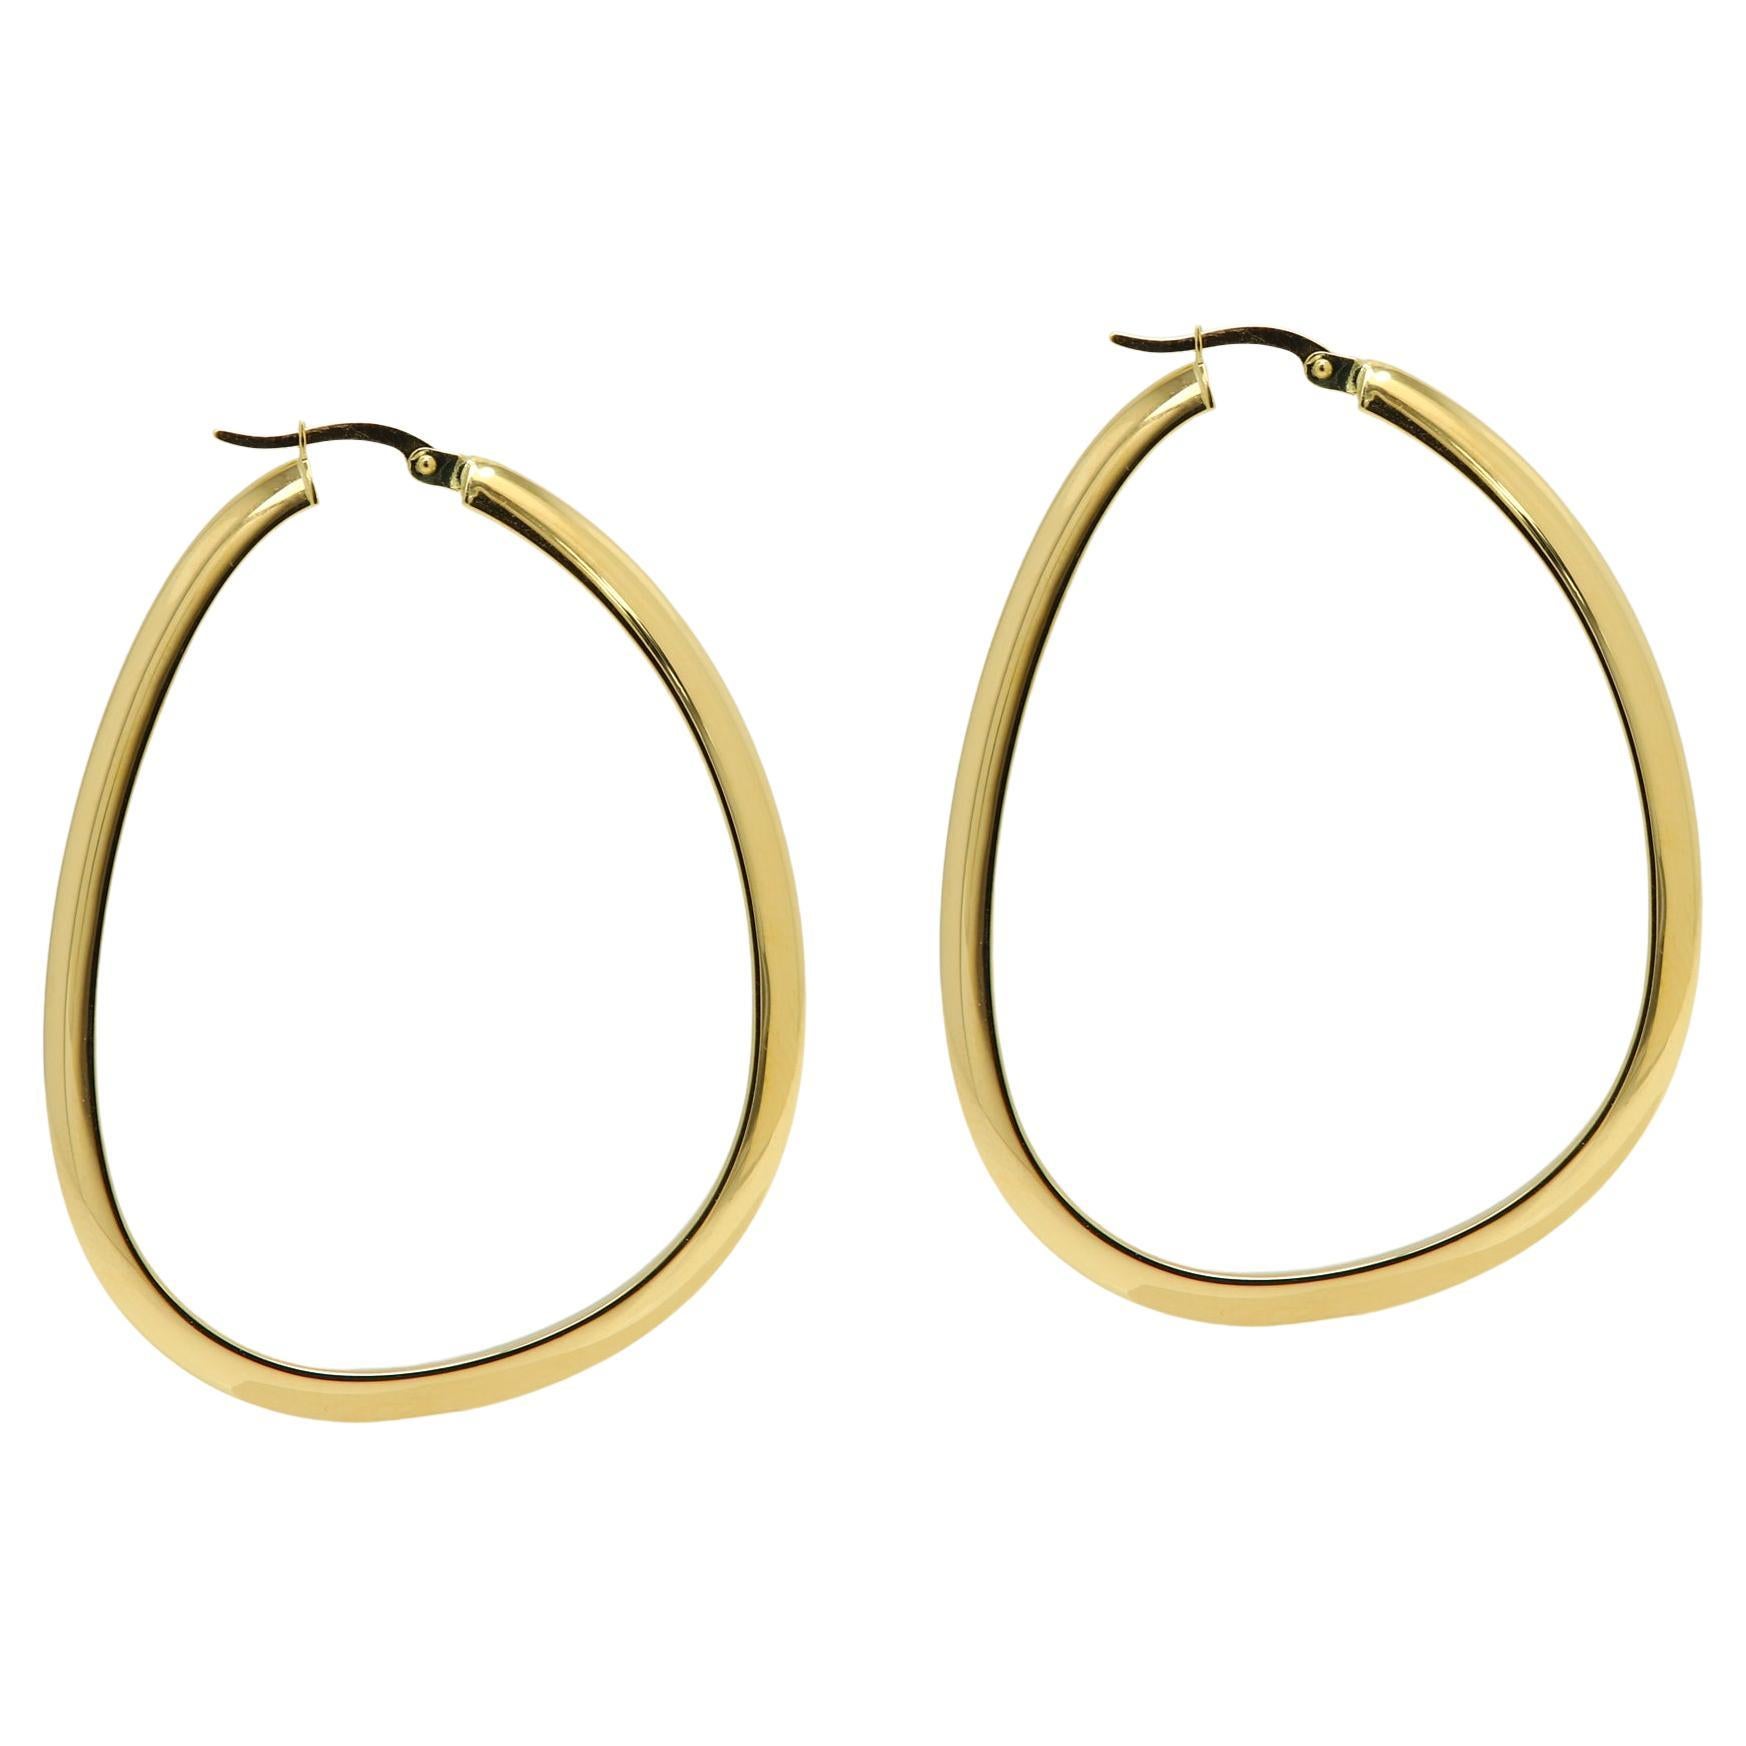 Tall Italian Hoops 14 Karat Solid Gold Earrings Gold Hoops Artistic Earrings For Sale